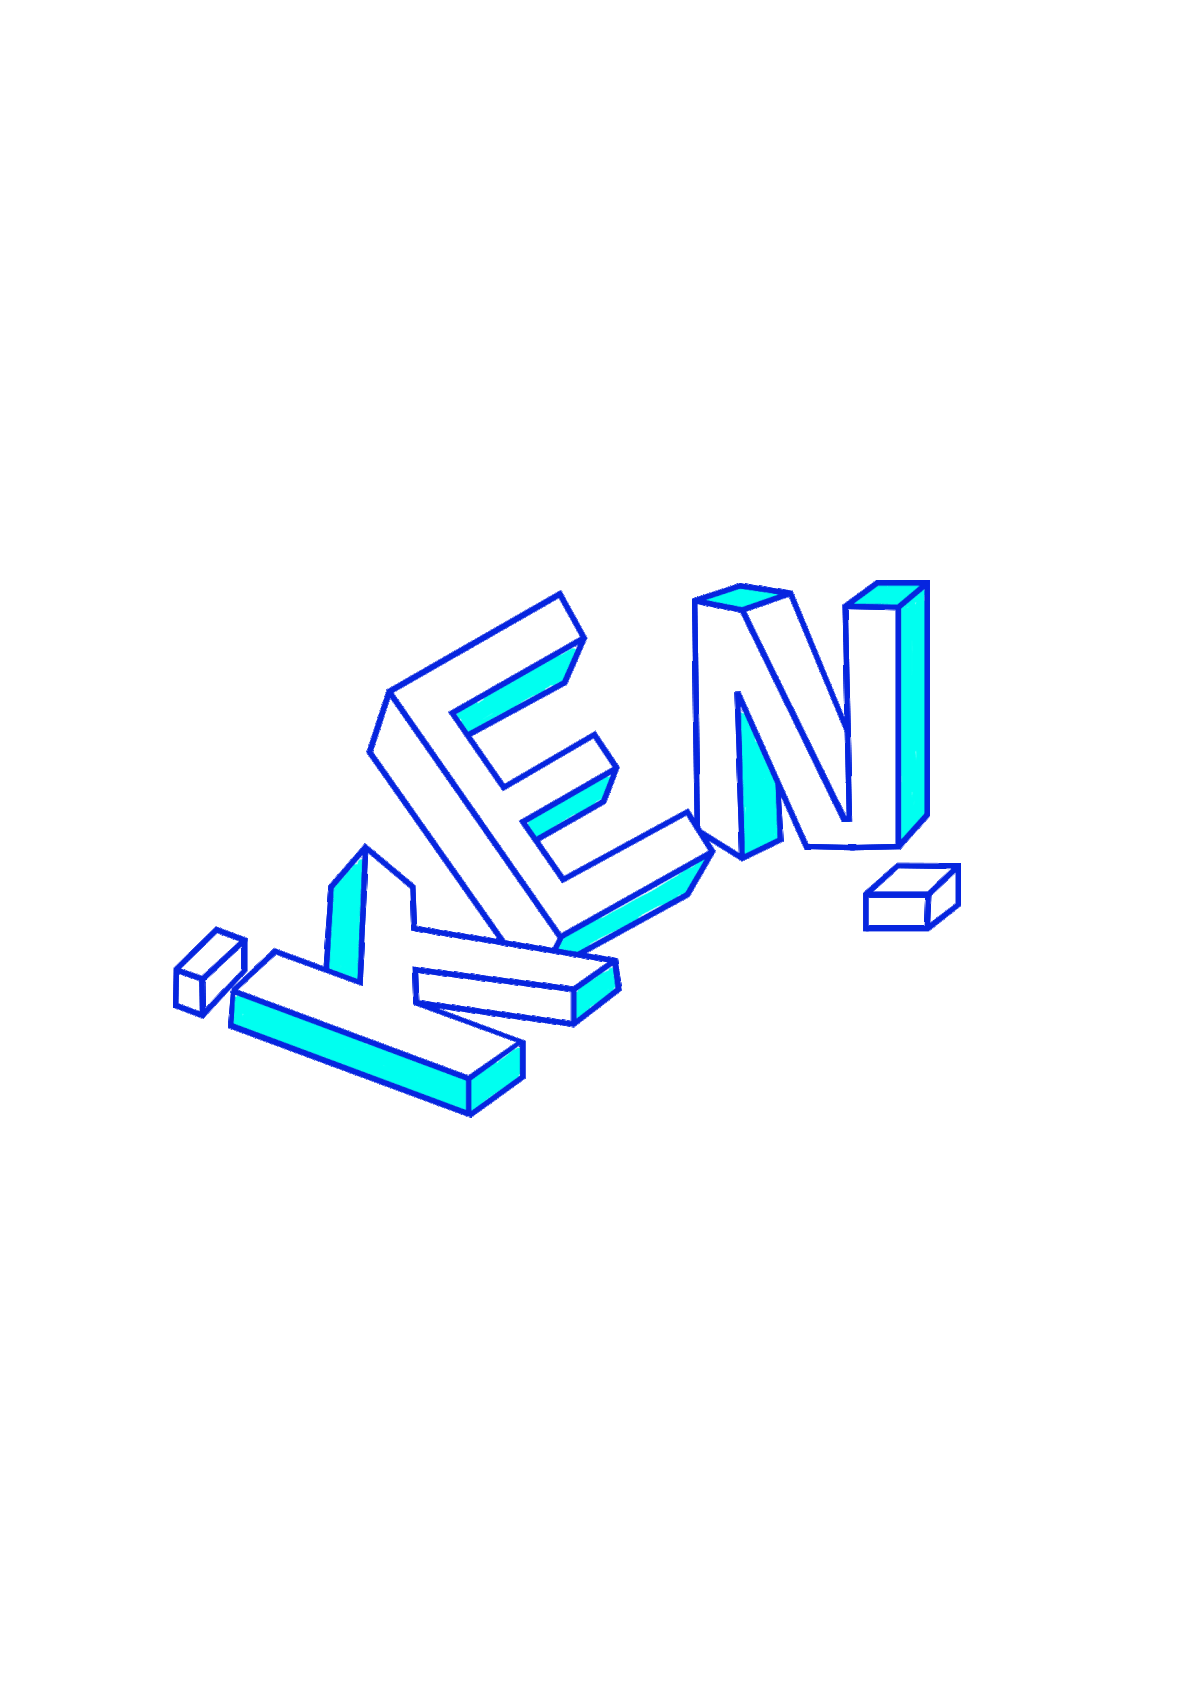 Ken Logo - KEN// Logo// Brand Identity on Behance